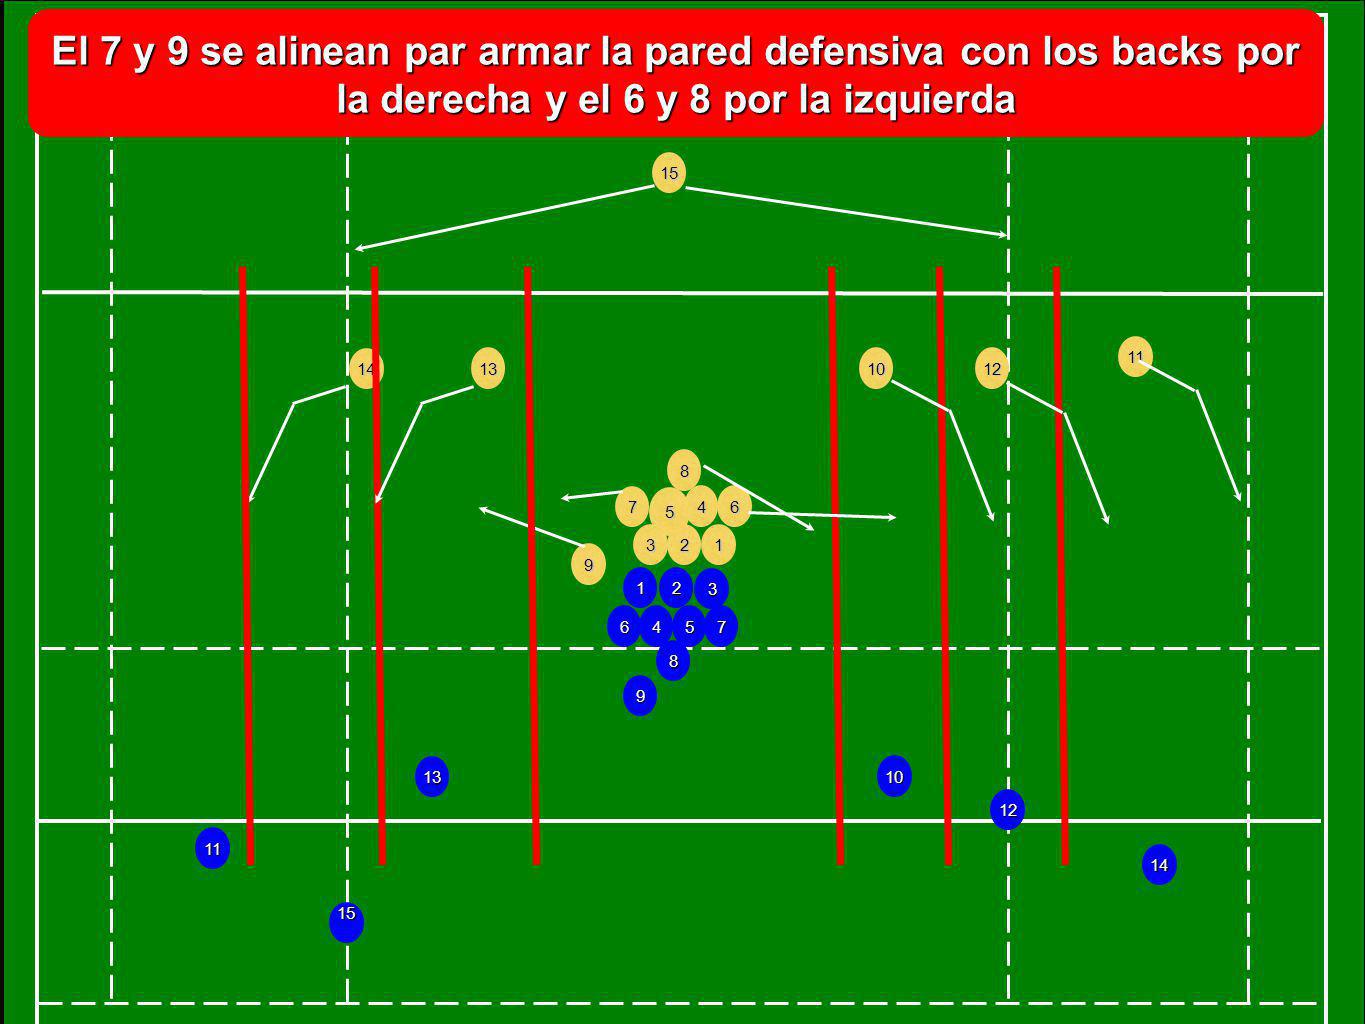 El 7 y 9 se alinean par armar la pared defensiva con los backs por la derecha y el 6 y 8 por la izquierda